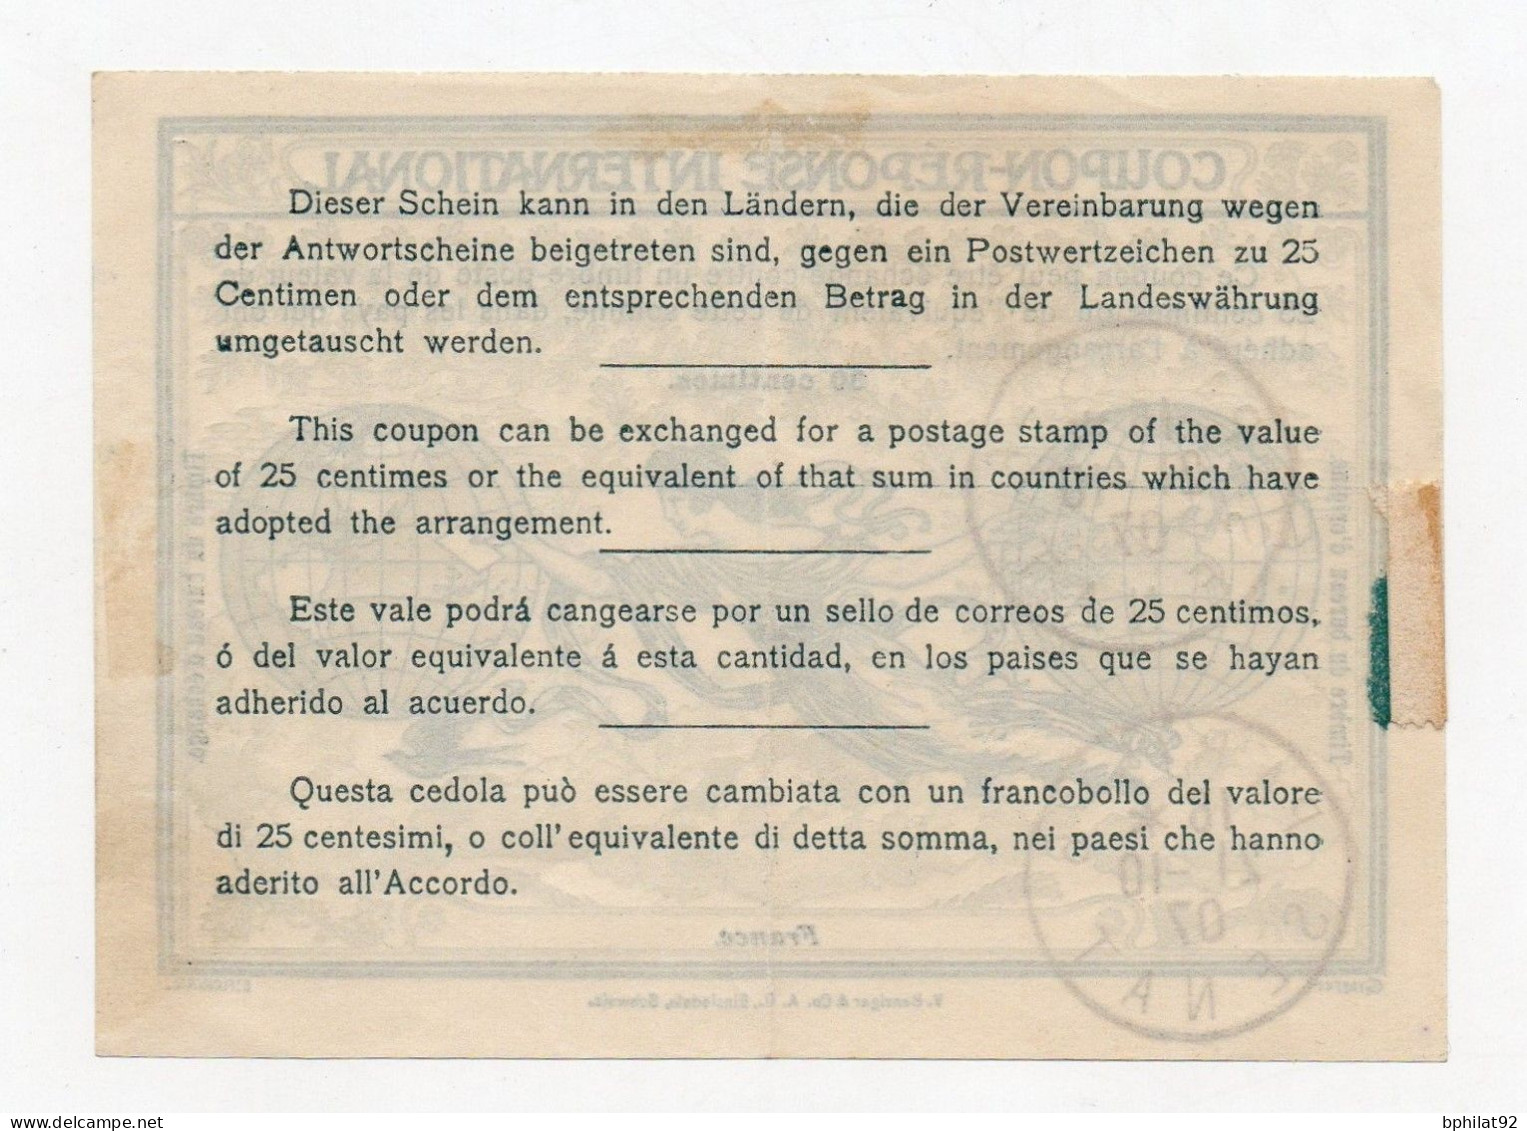 !!! COUPON REPONSE INTERNATIONAL OBLIT PARIS - SENAT DU 21/10/1907 (CREES LE 1/10/1907) - Antwoordbons